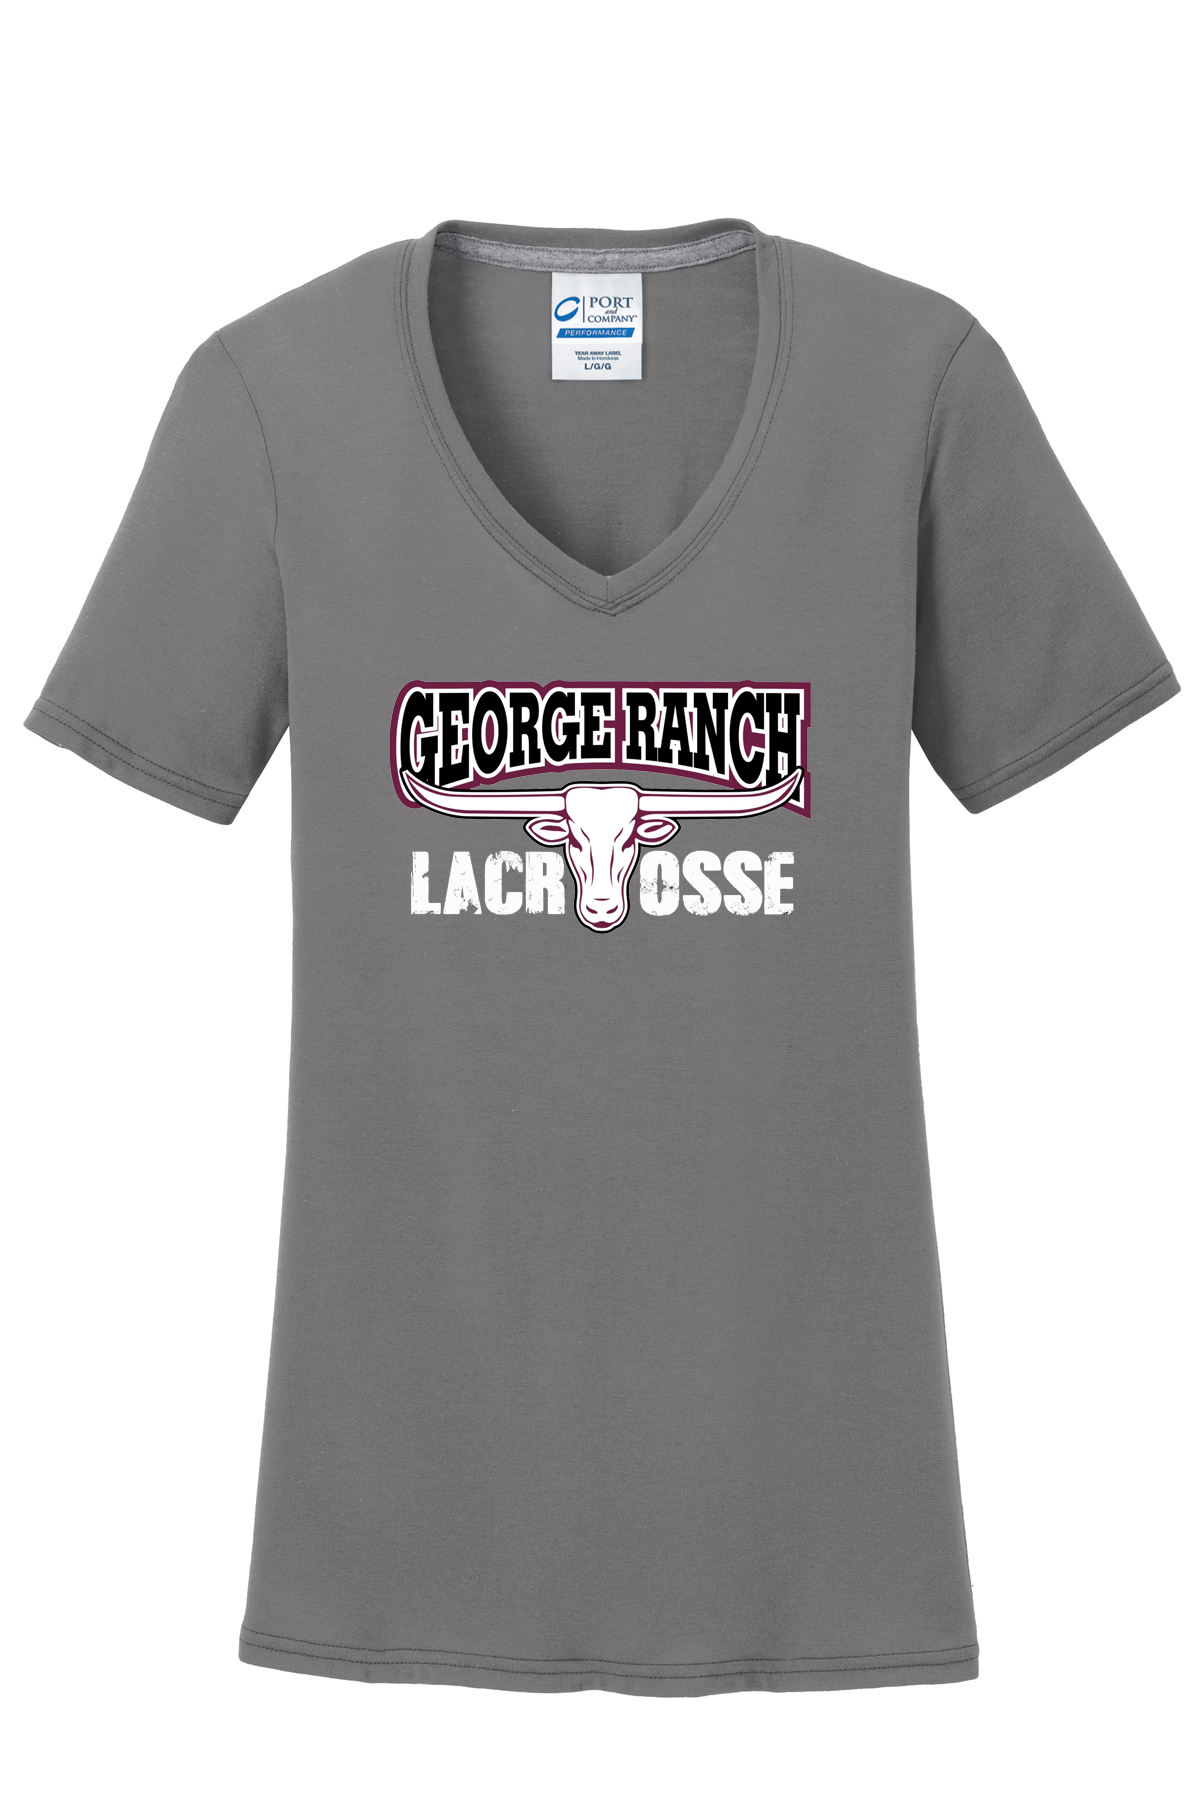 GR Longhorns Lacrosse Women's T-Shirt